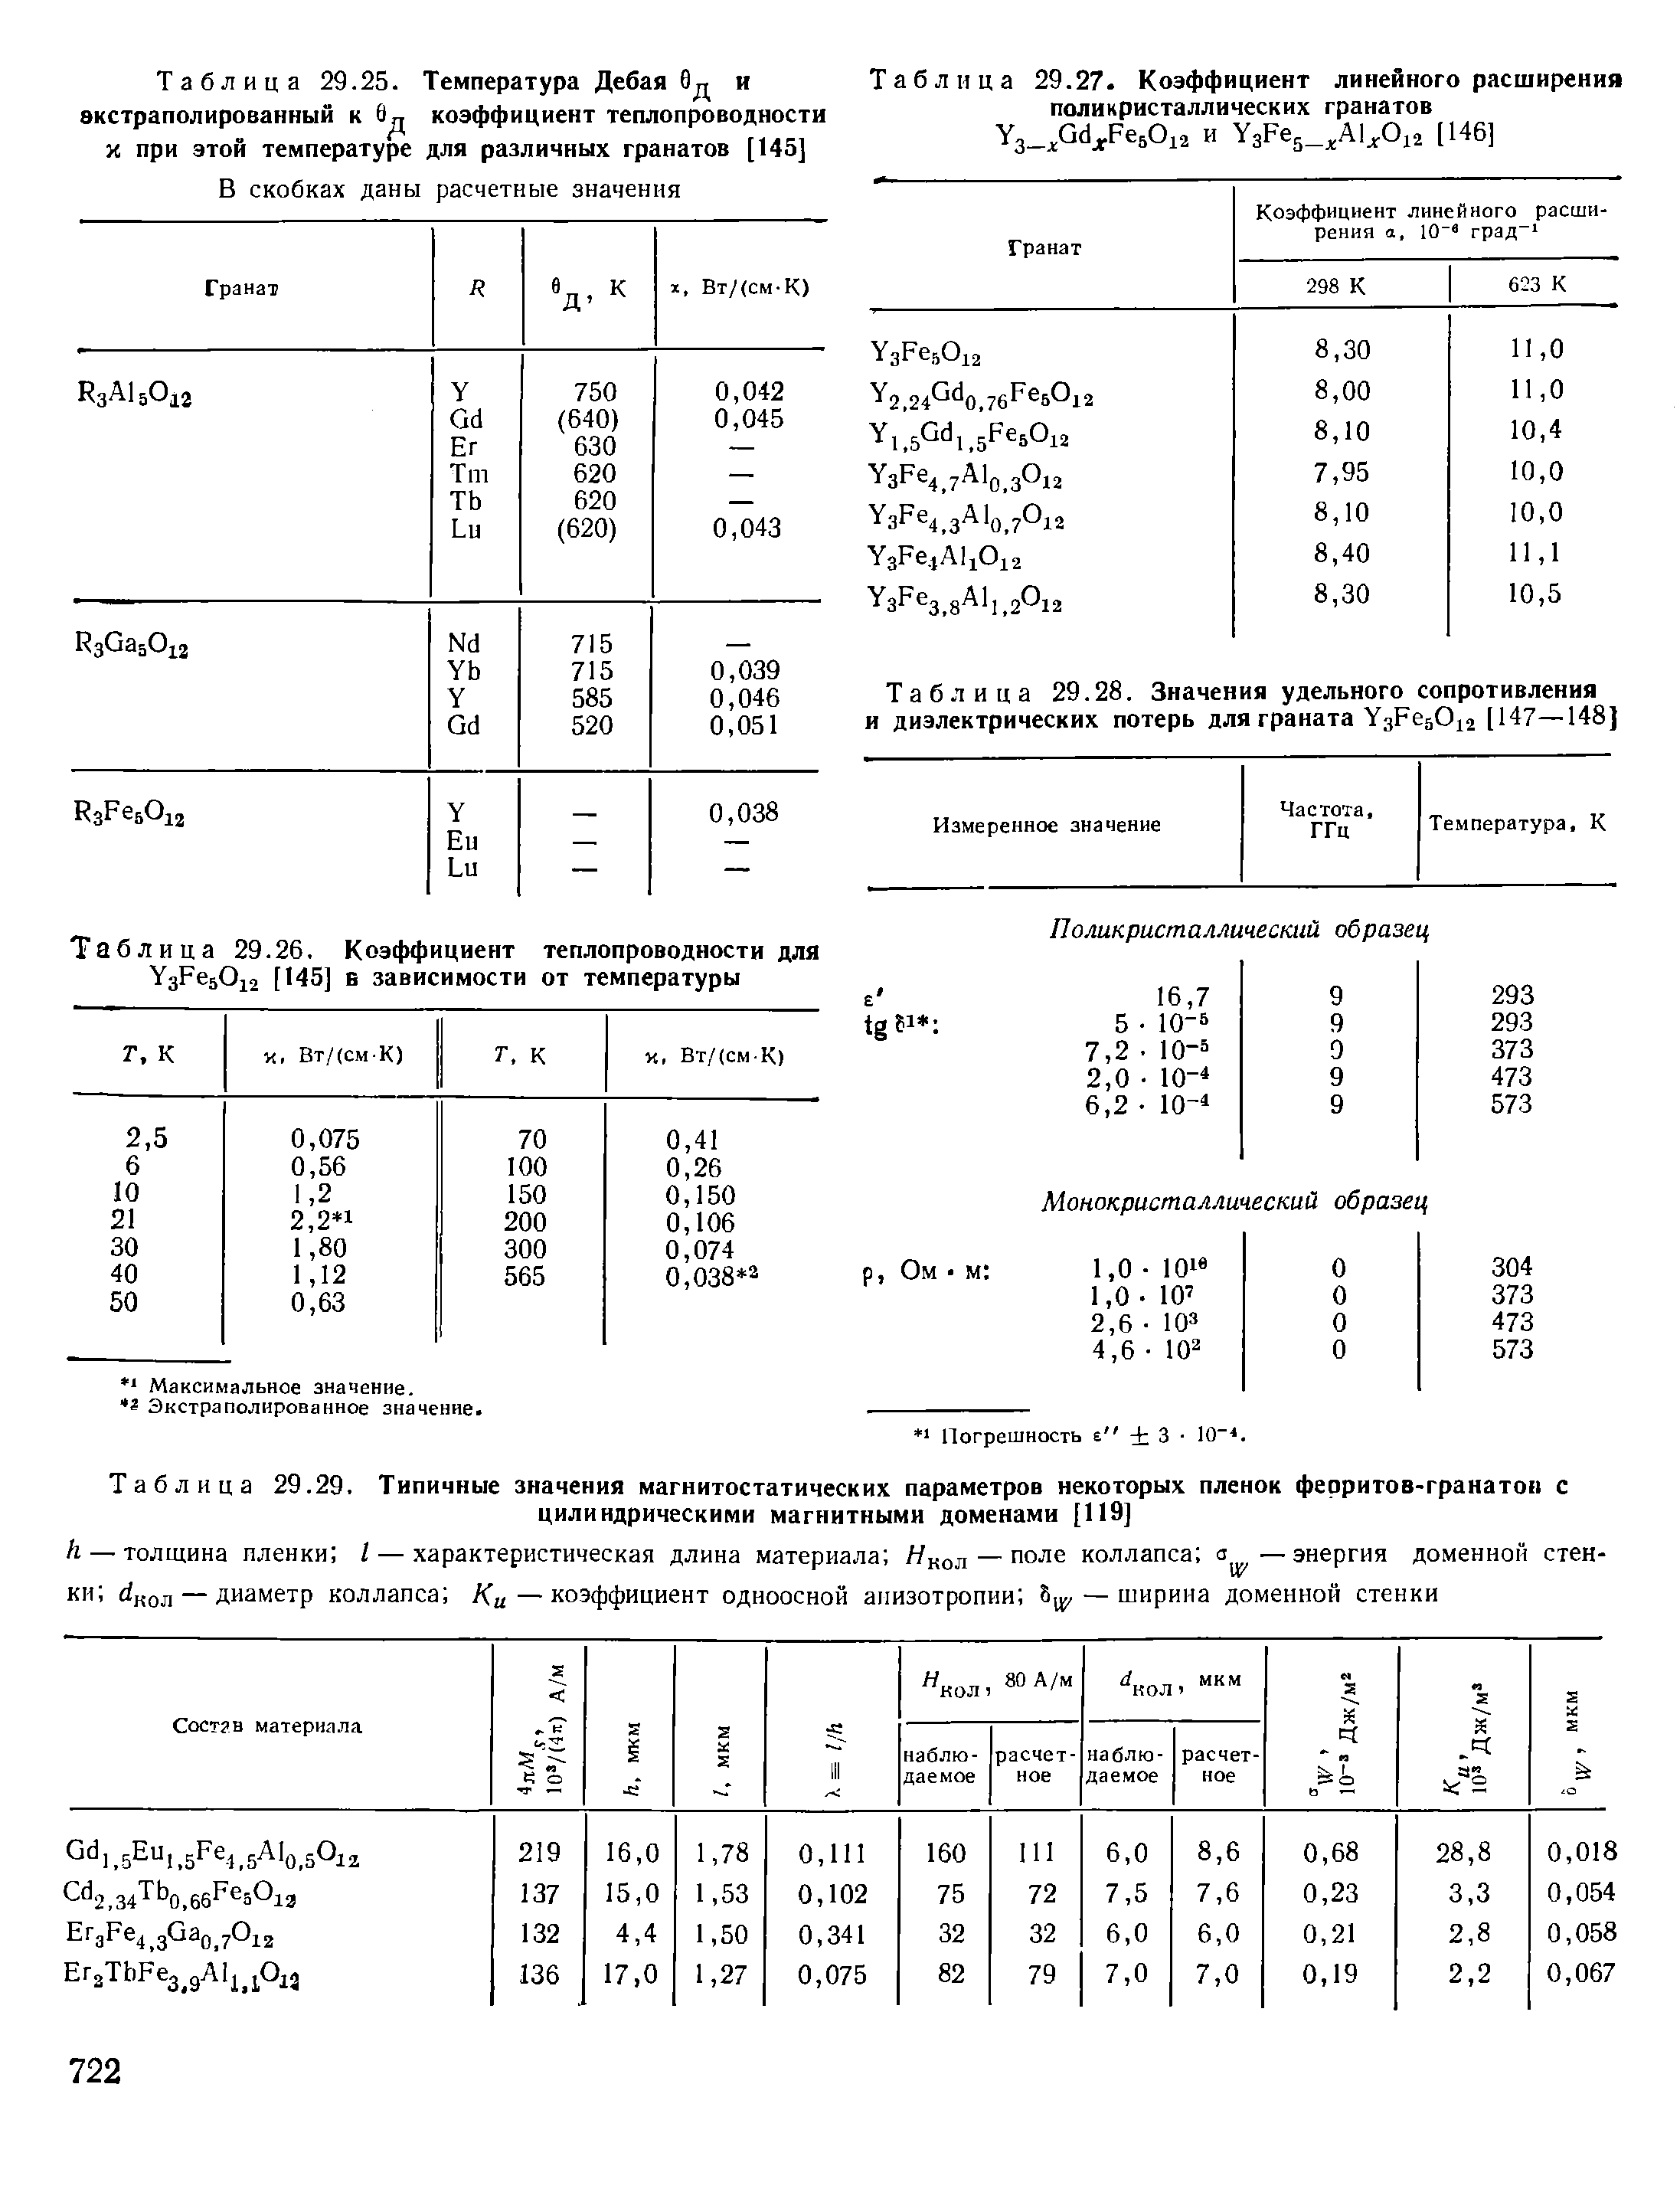 Таблица 29.29. Типичные значения магнитостатических параметров некоторых пленок ферритов-гранатон с
